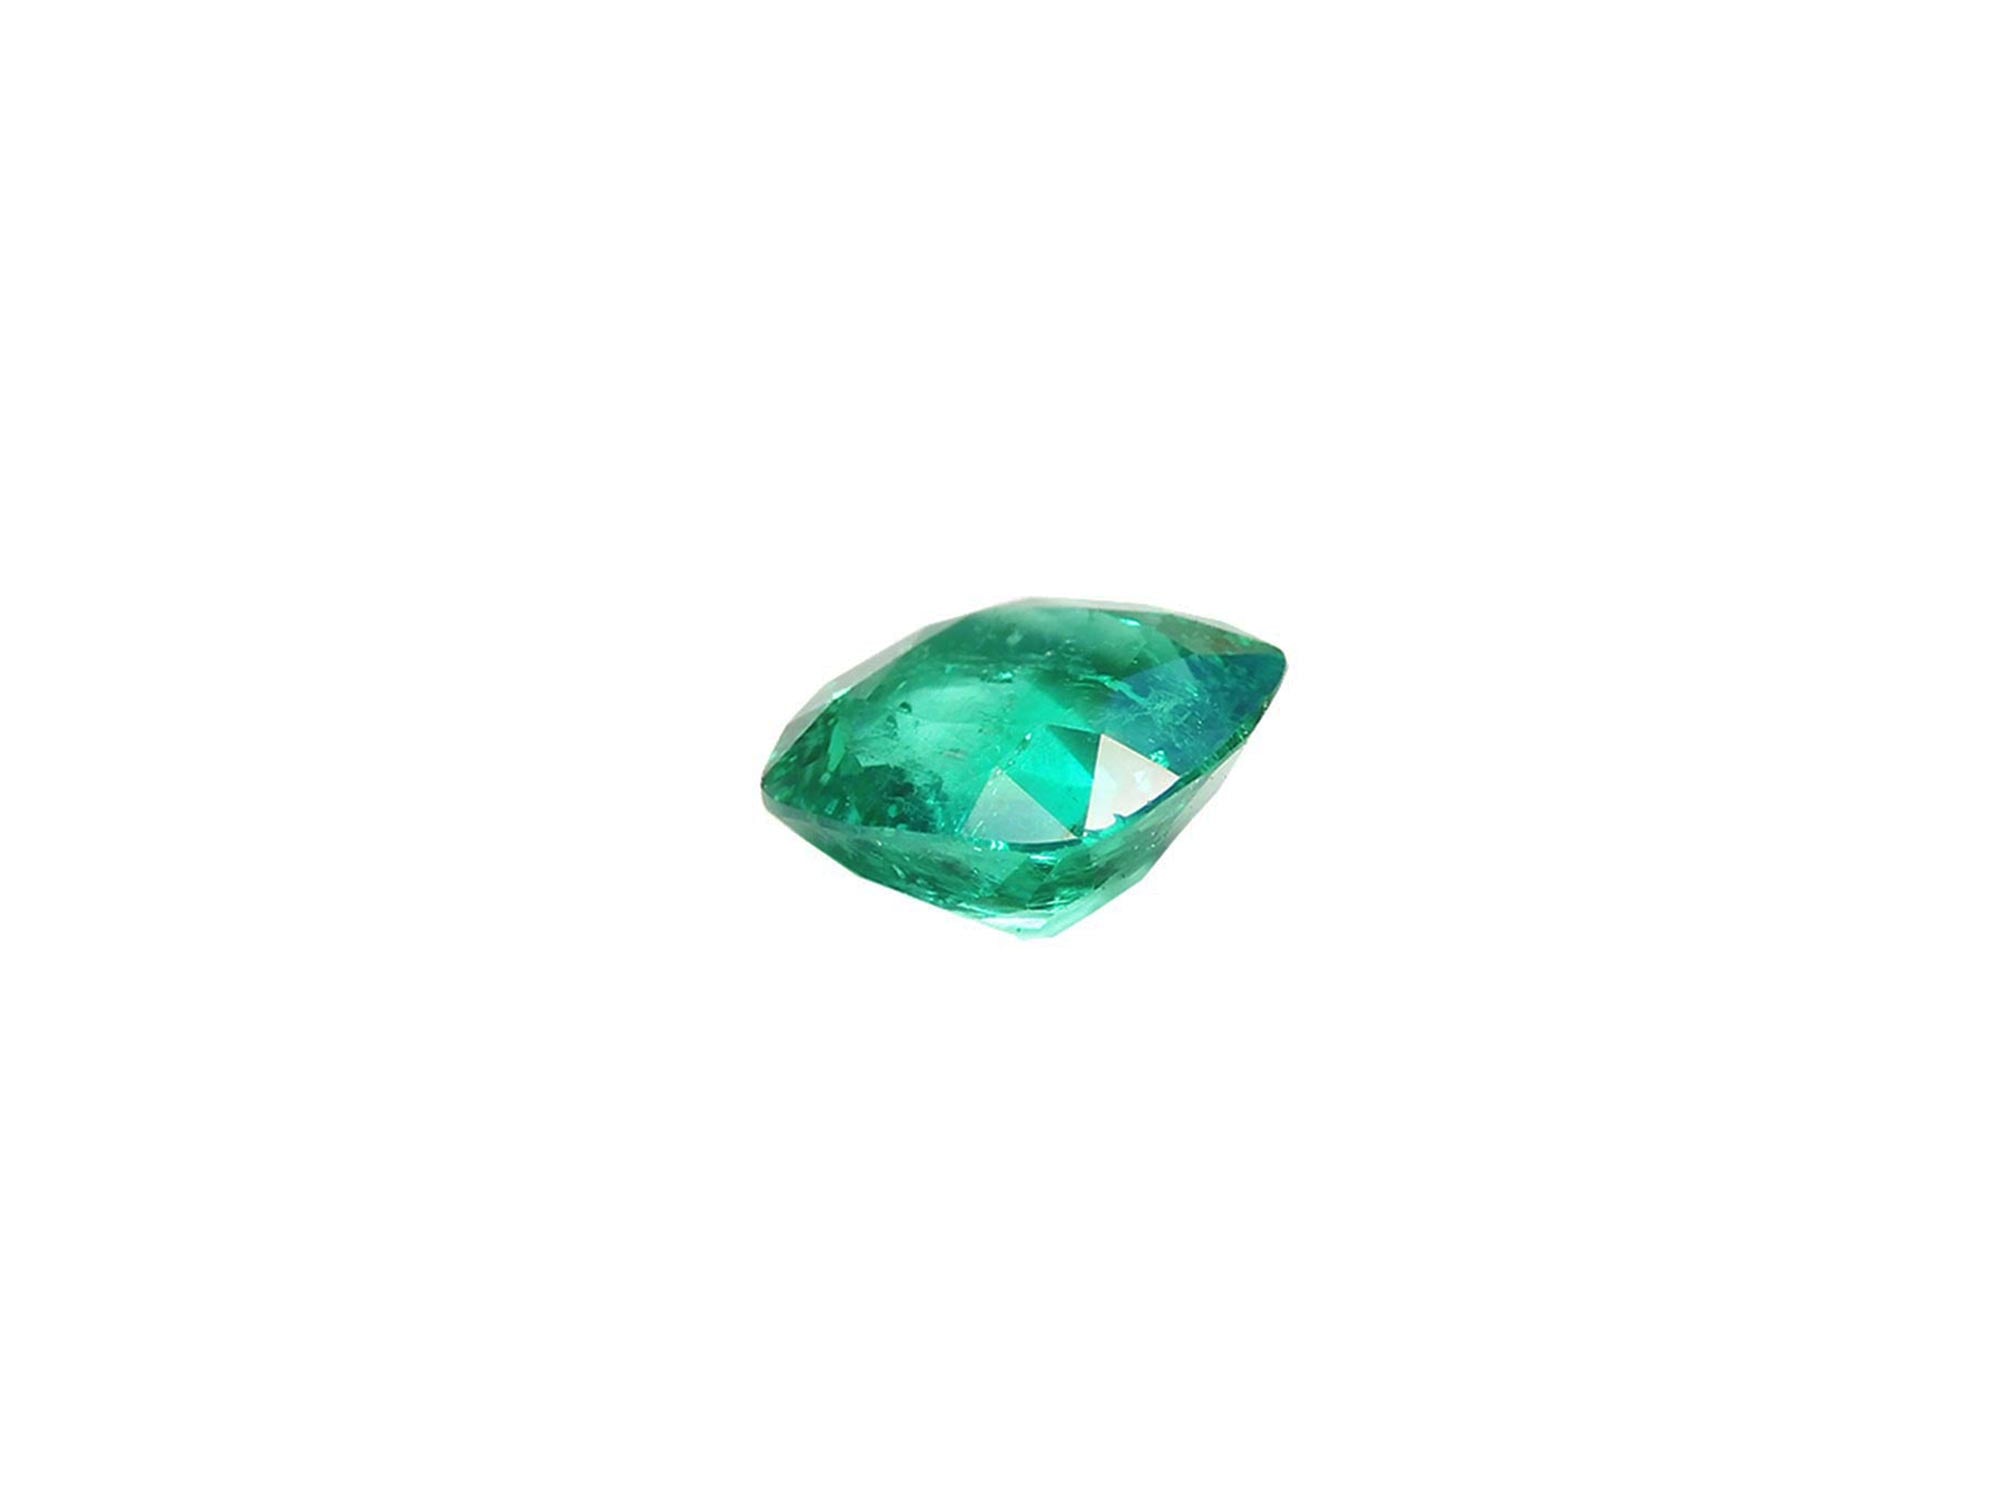 Loose cushion cut loose emerald for sale\